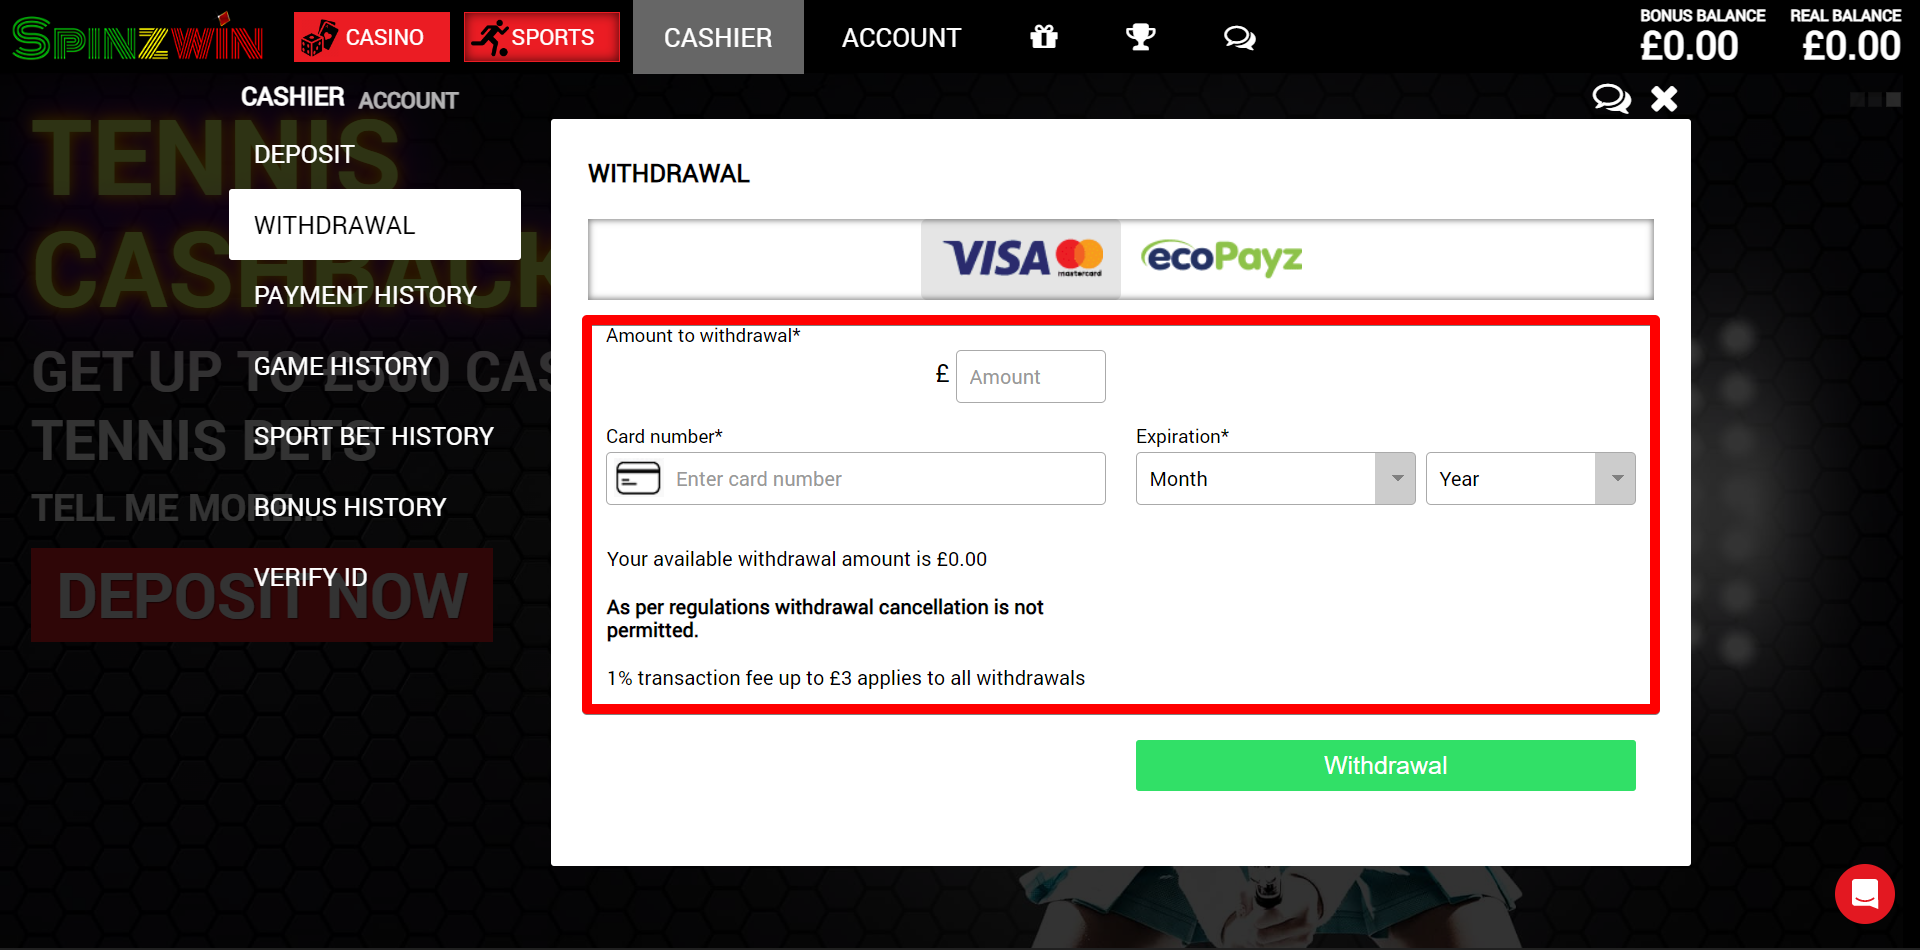 Enter payment details